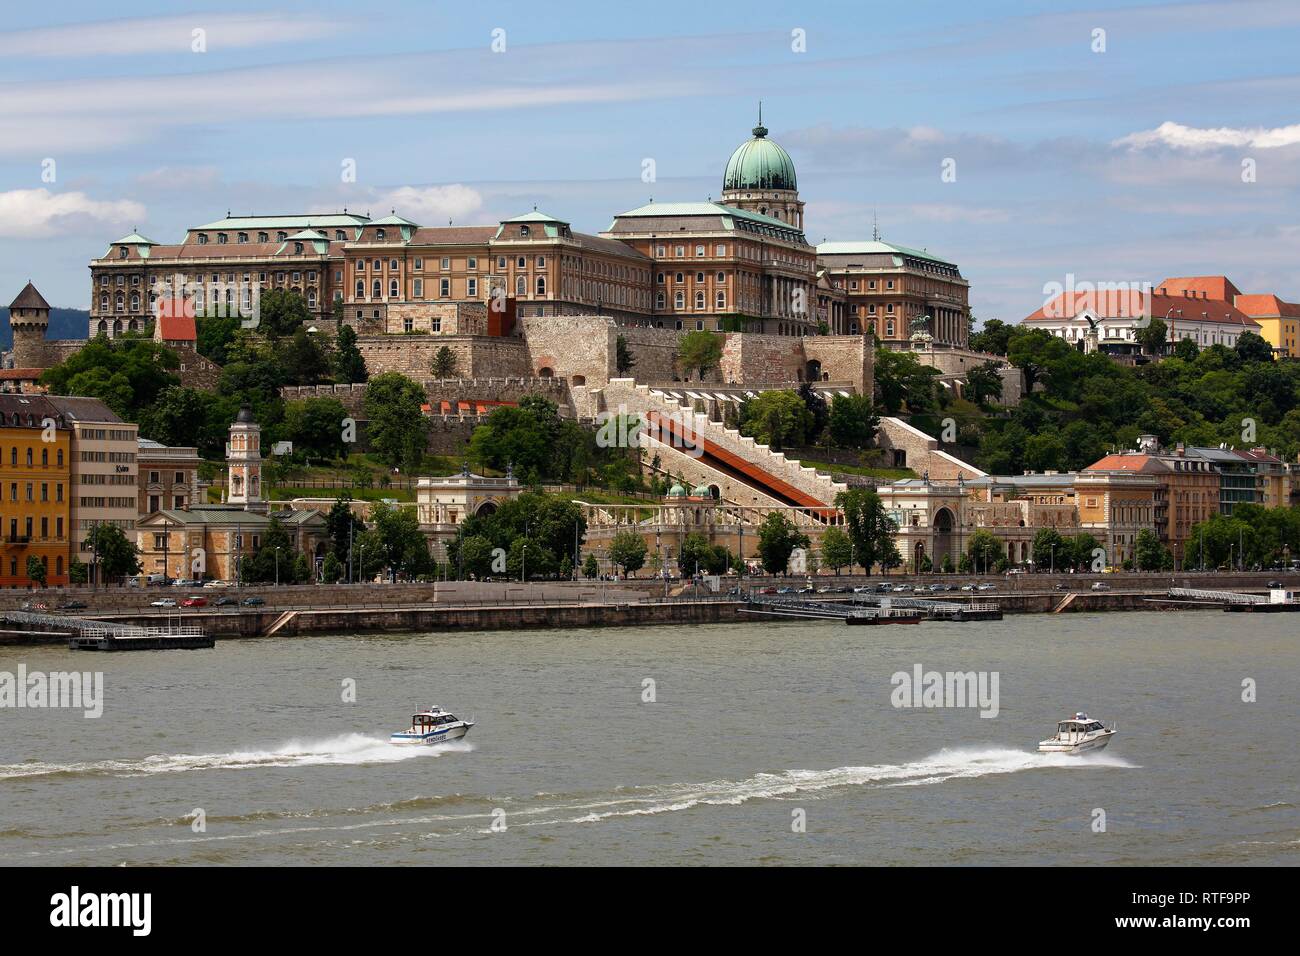 Palacio Castillo en el Danubio, visto desde el distrito de Pest, barrio del castillo de Budapest, Hungría Foto de stock